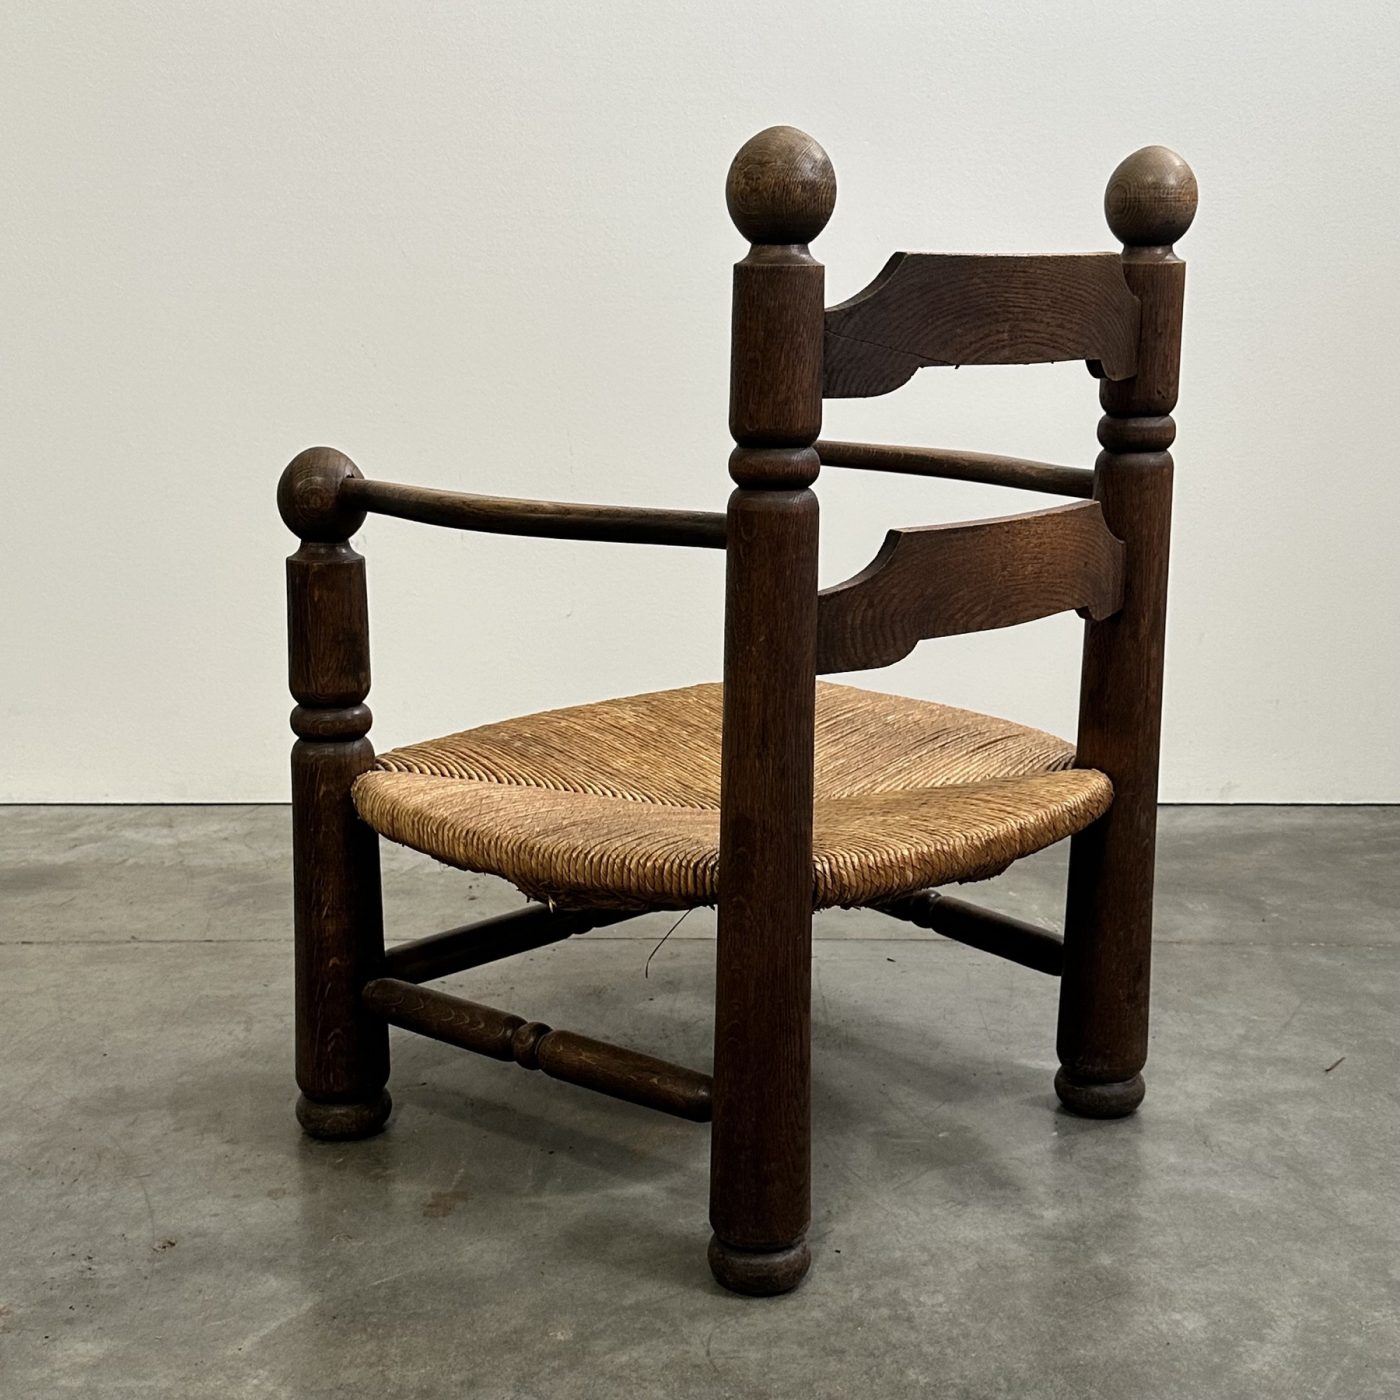 objet-vagabond-dudouyt-armchairs0005